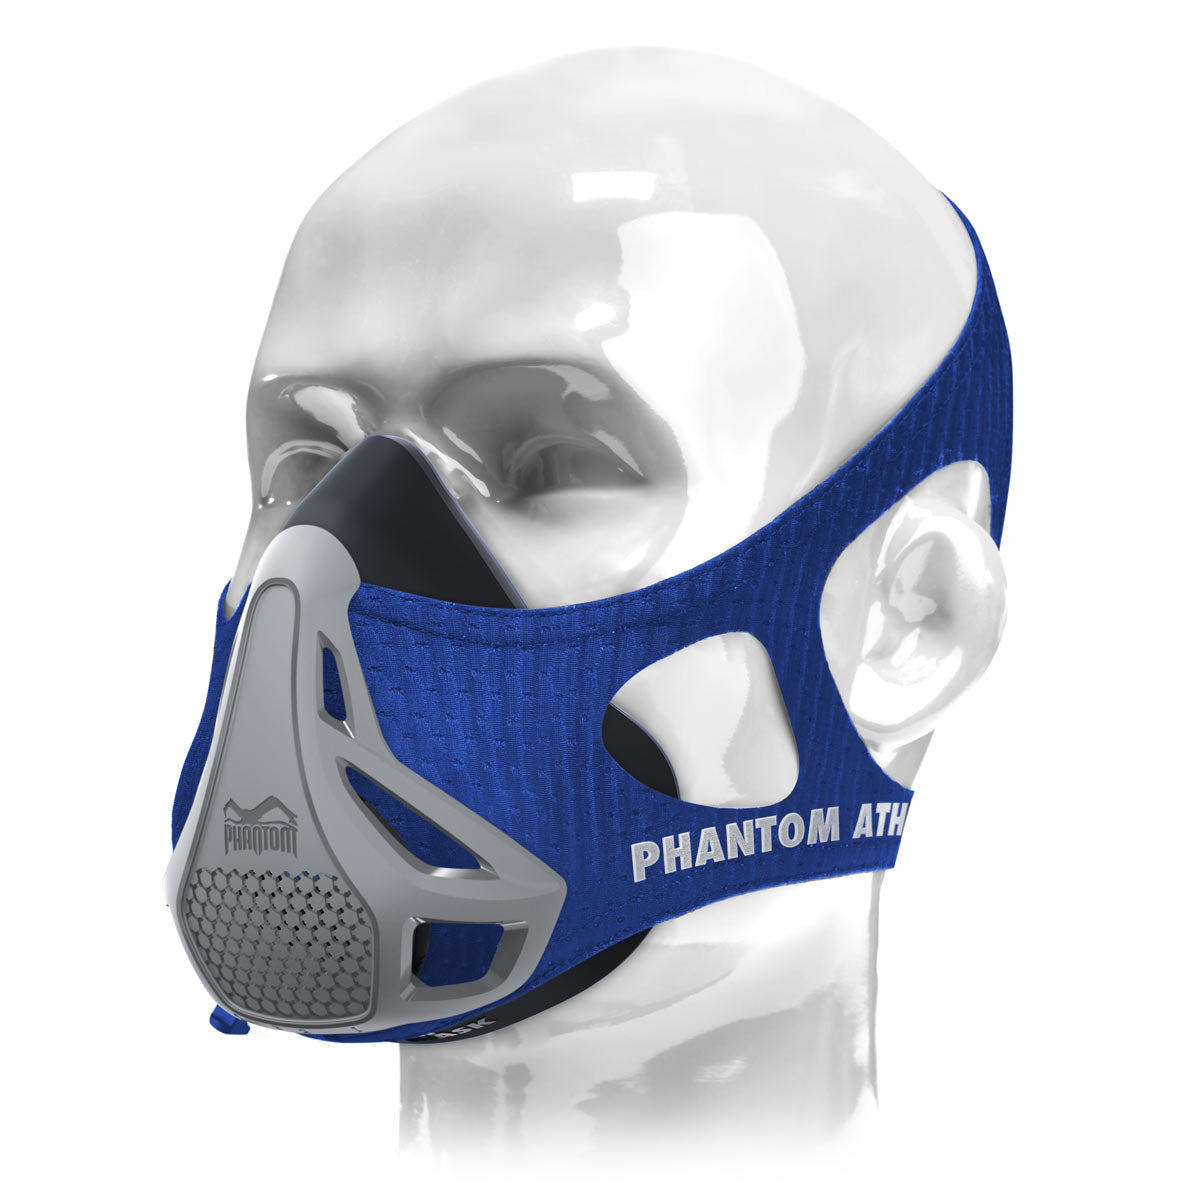 A máscara de treinamento Phantom na versão misteriosa. Deixe a cor surpreender você. Dispositivo de treinamento ideal para levar seu condicionamento físico ao próximo nível.